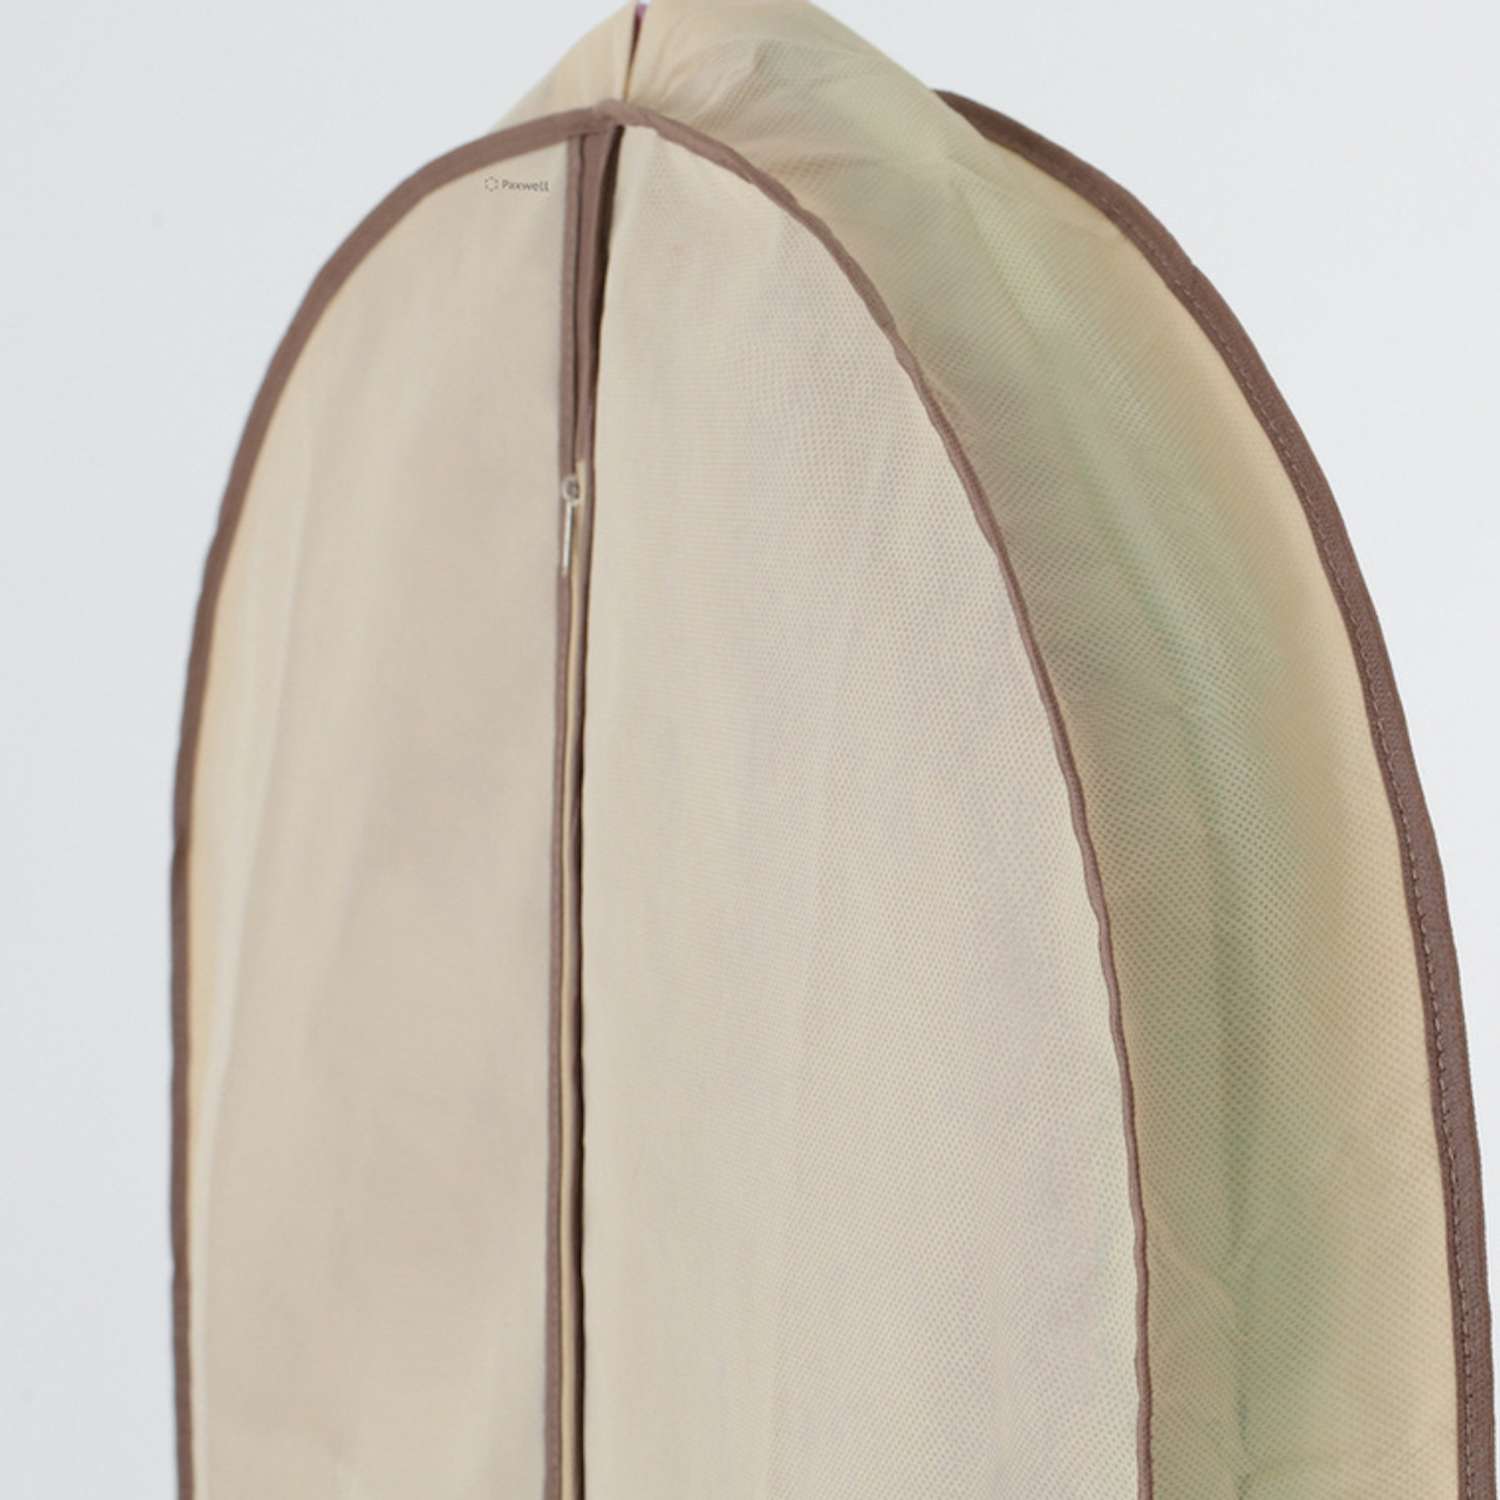 Чехол для широкой одежды Paxwell 100 см бежевый - фото 2